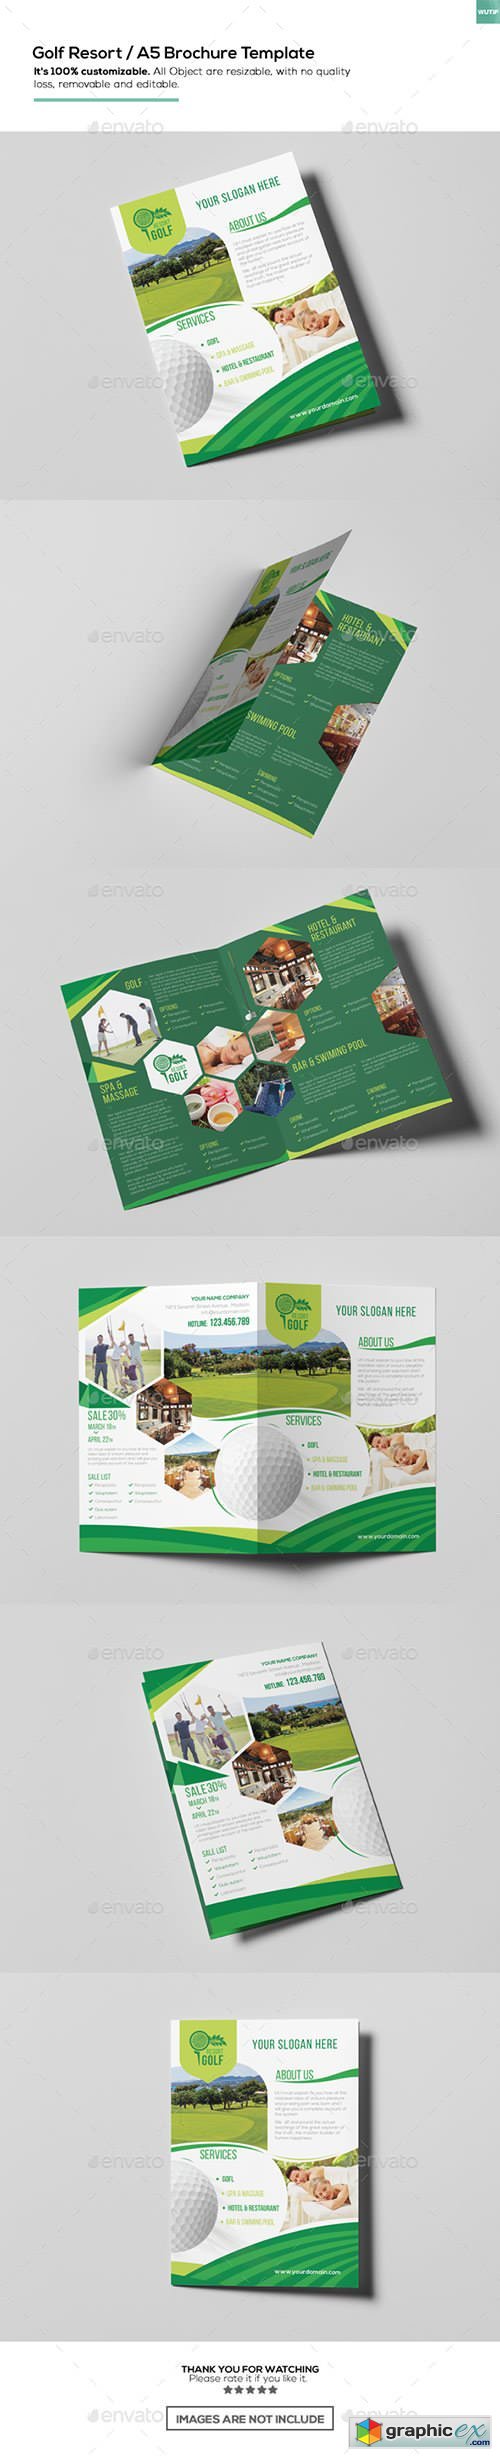 Golf Resort/ A5 Brochure Template